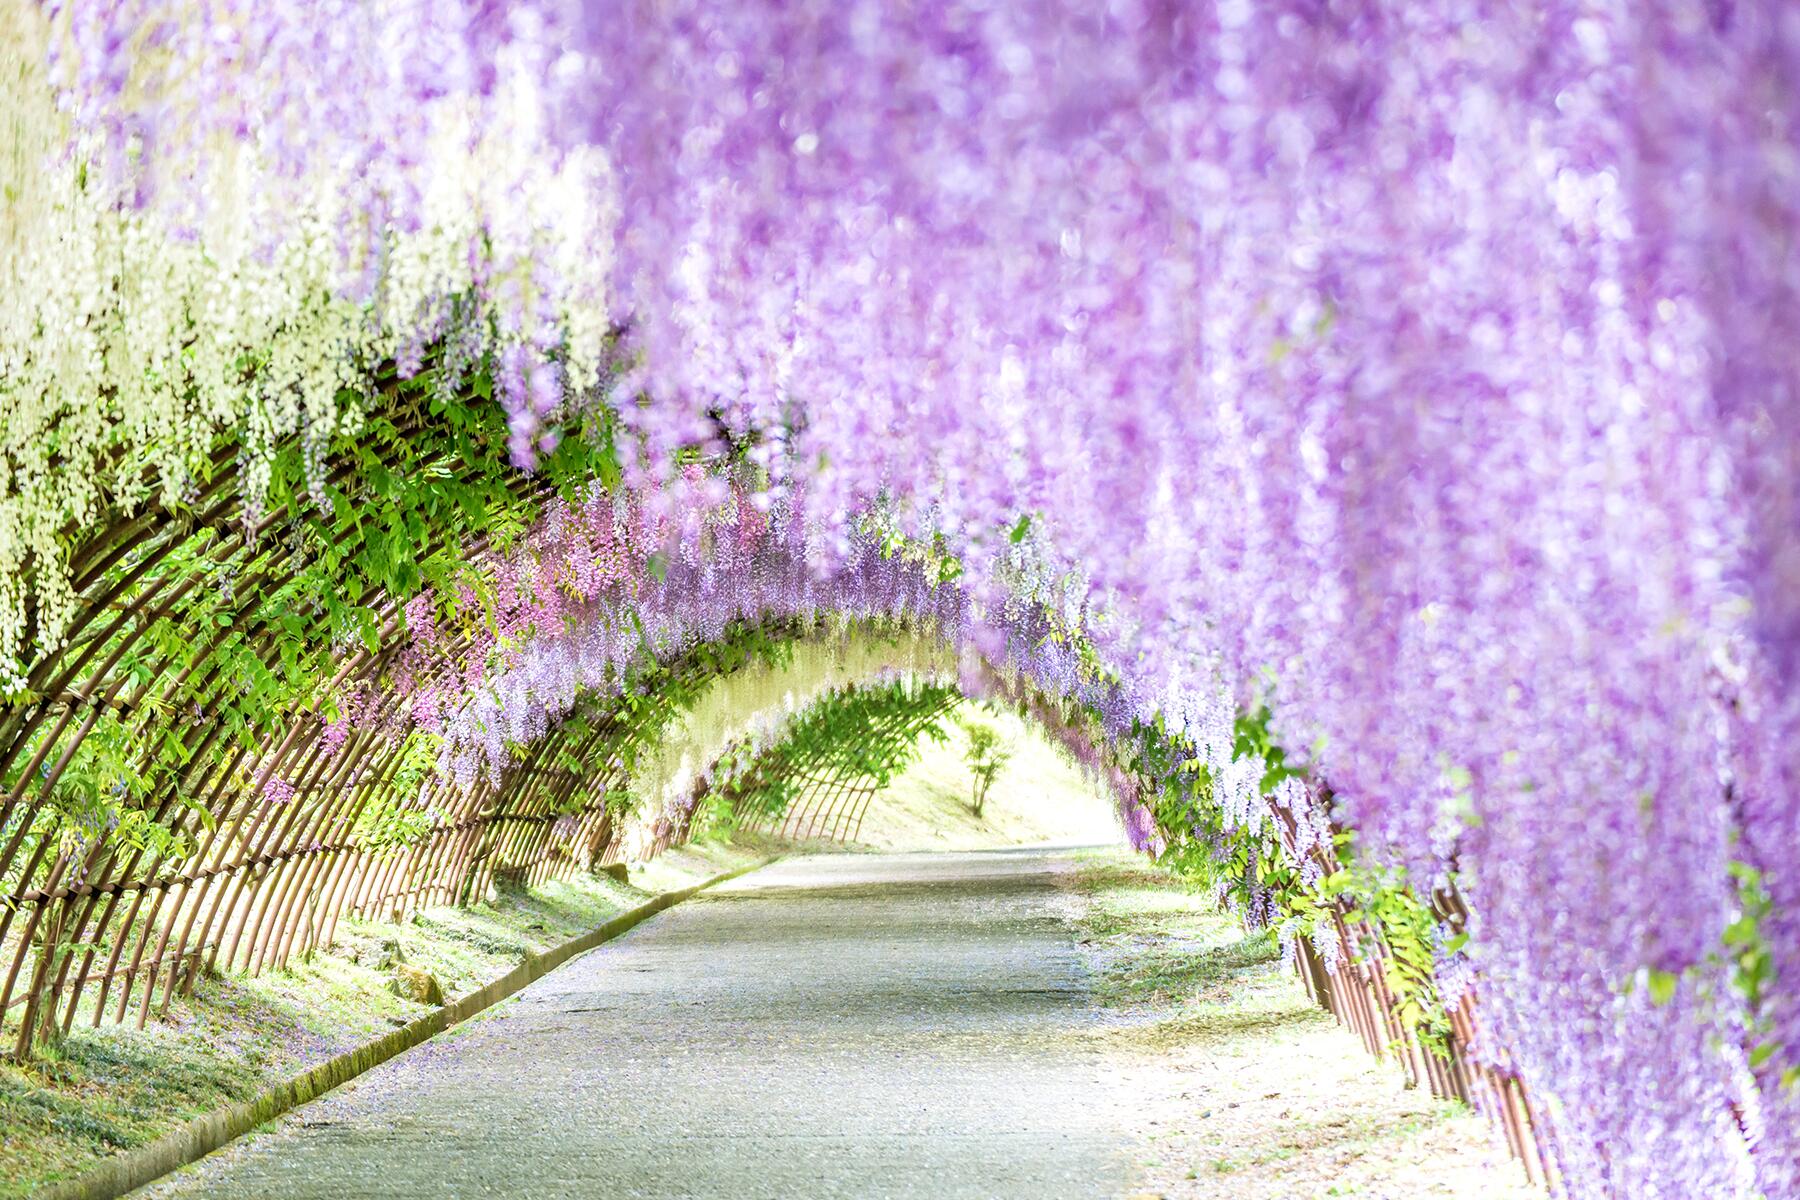 Тоннель глициний, сад Кавати Фудзи, Япония